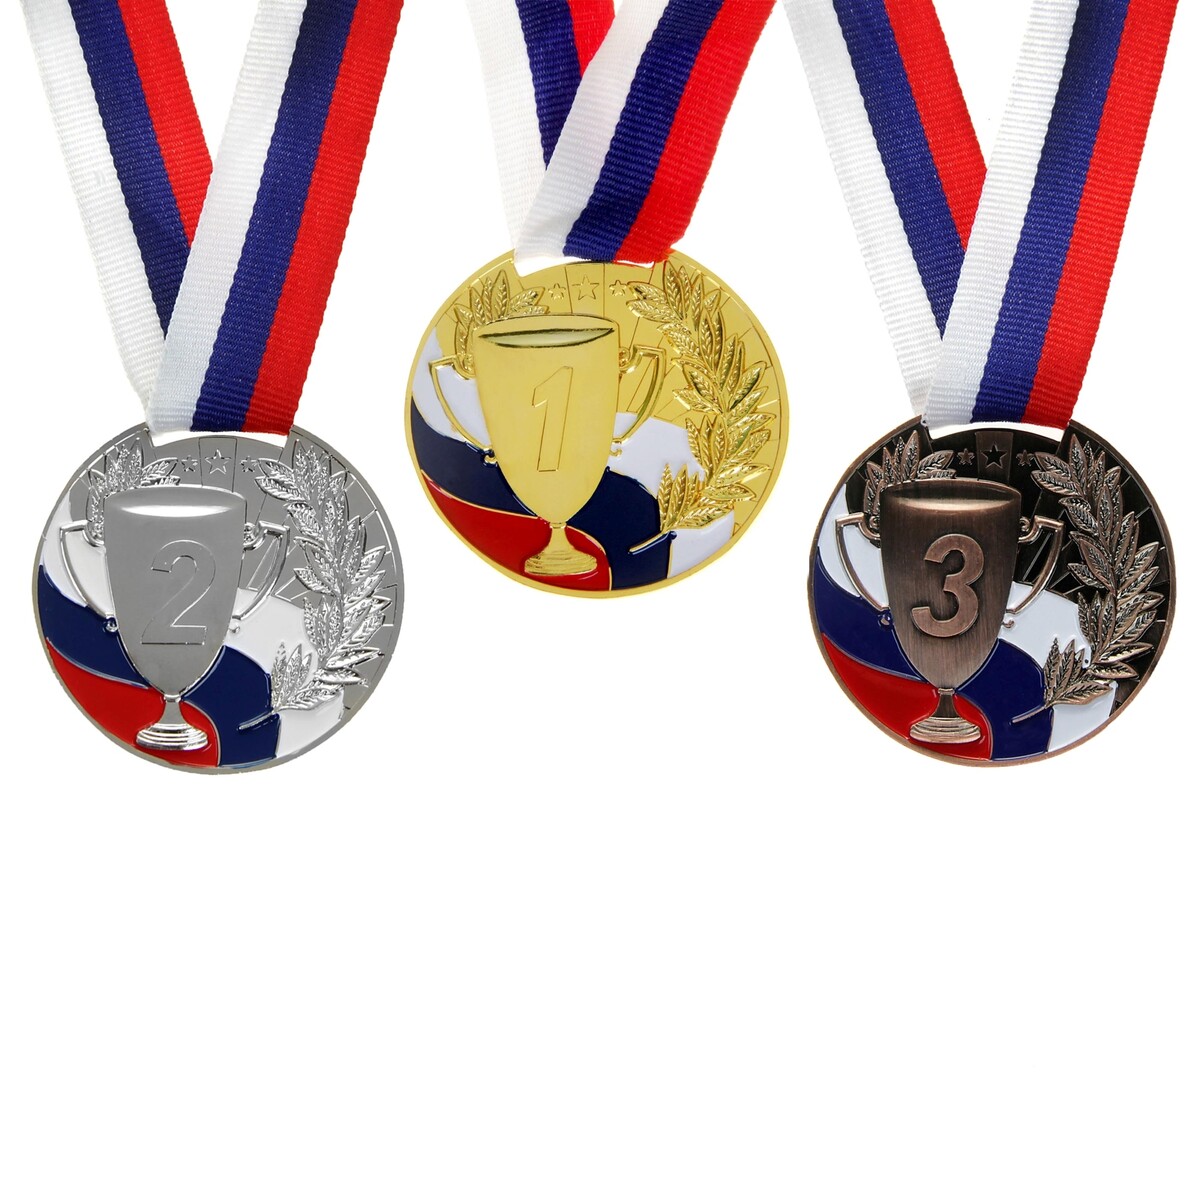 Медаль призовая 013 диам 5 см. 2 место, триколор. цвет сер. с лентой медаль призовая 013 диам 5 см 2 место триколор сер с лентой